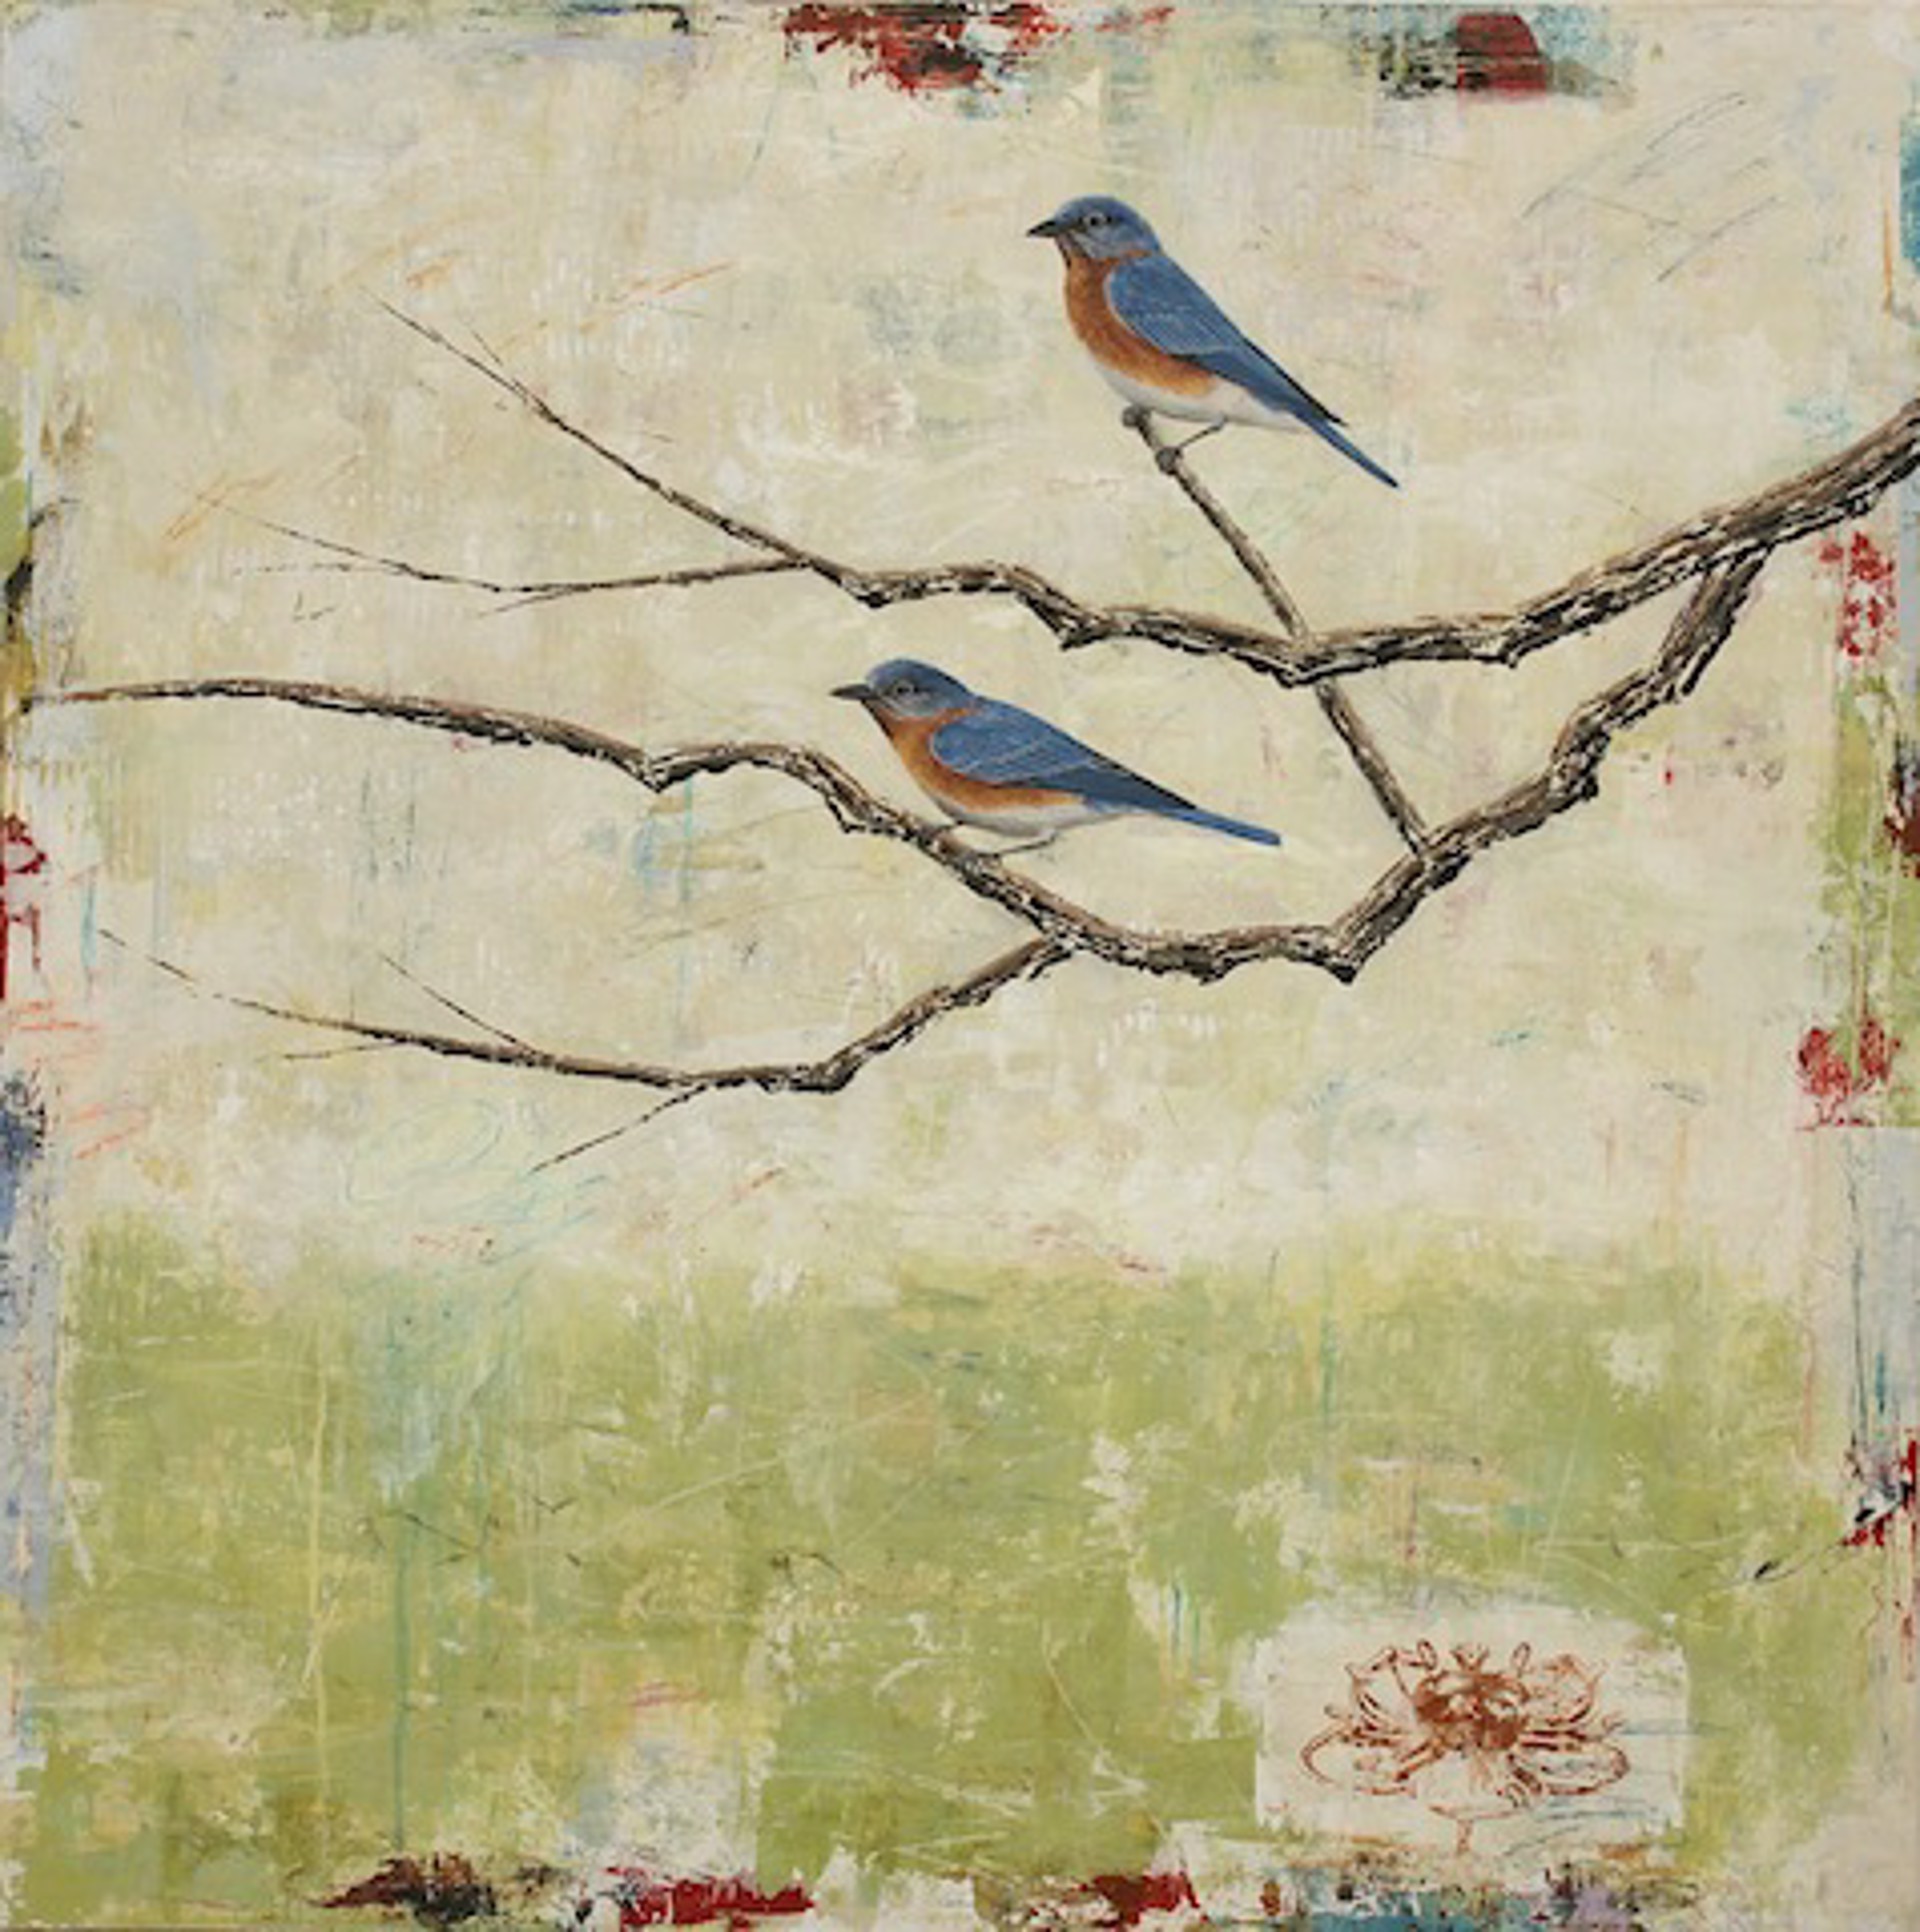 Eastern Bluebirds #8 by Paul Brigham